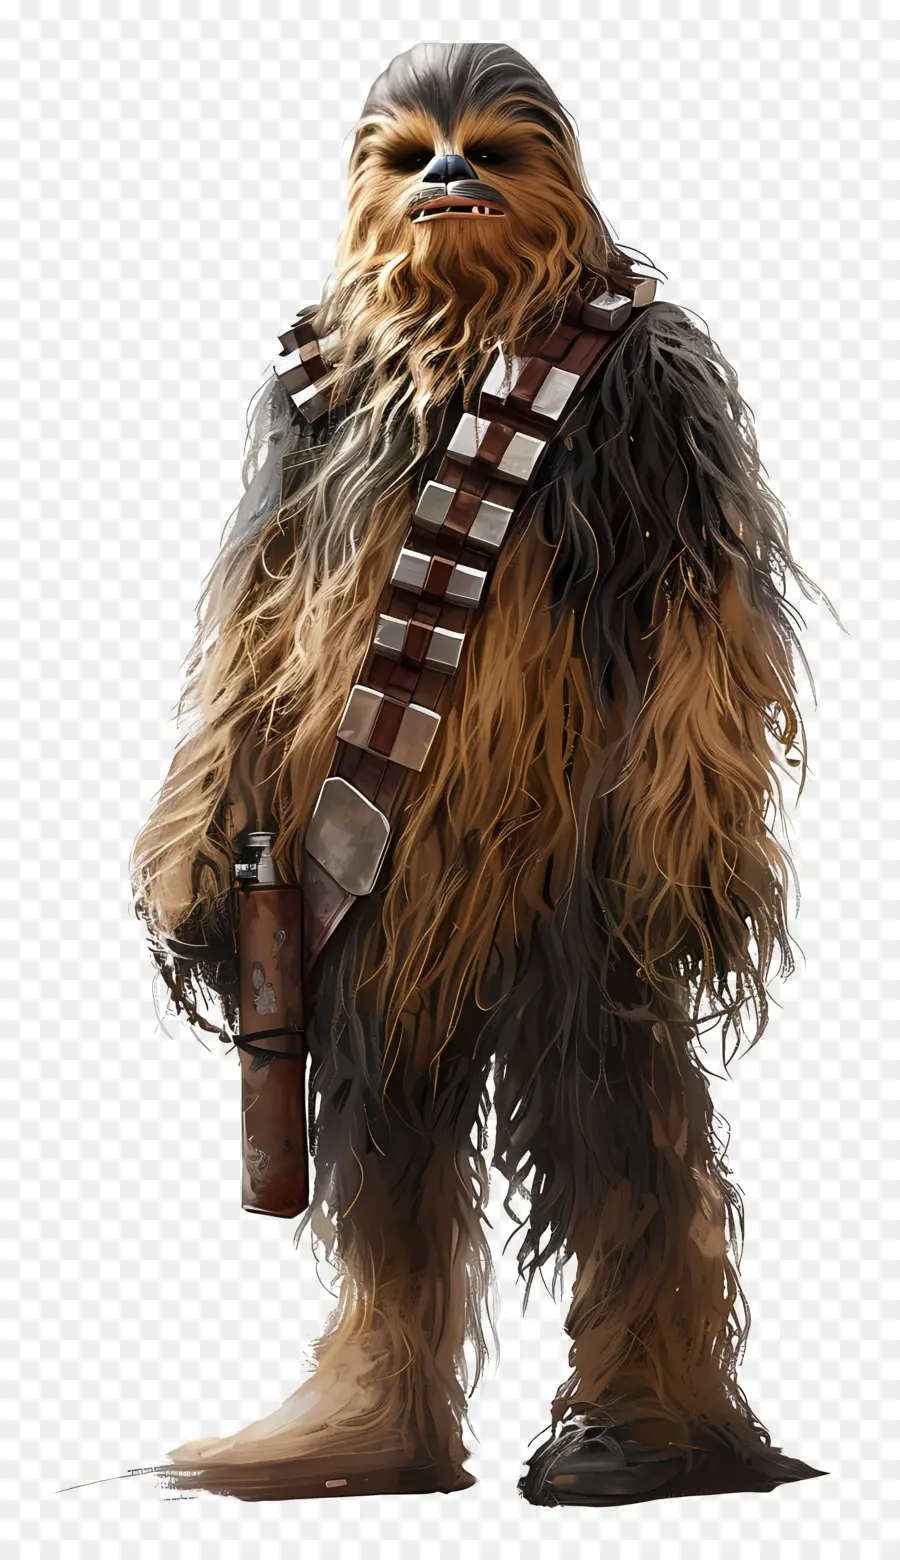 chiến tranh giữa các vì sao - Chewbacca, Wookiee với vũ khí, nền đen